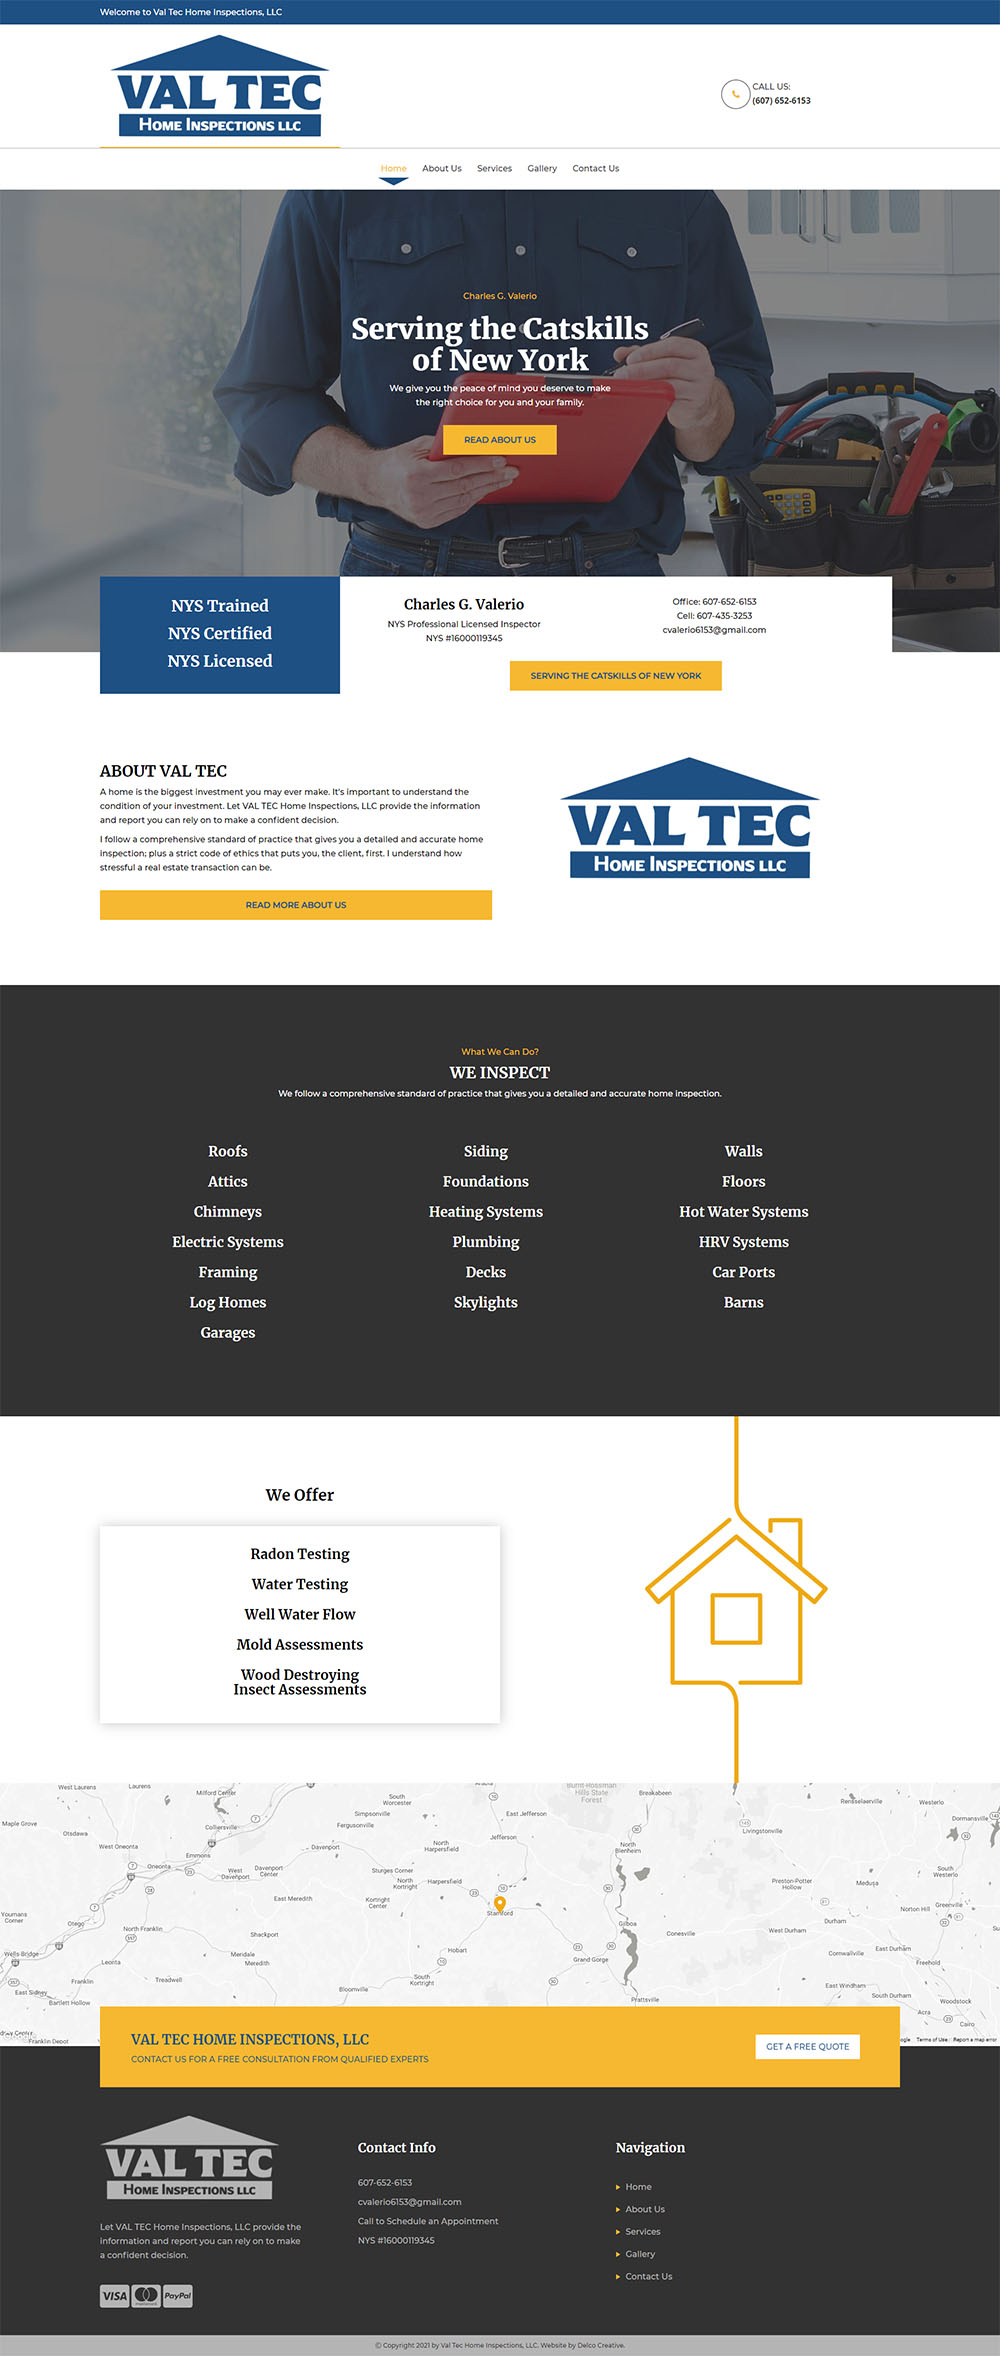 Val Tec Home Inspections, LLC Website